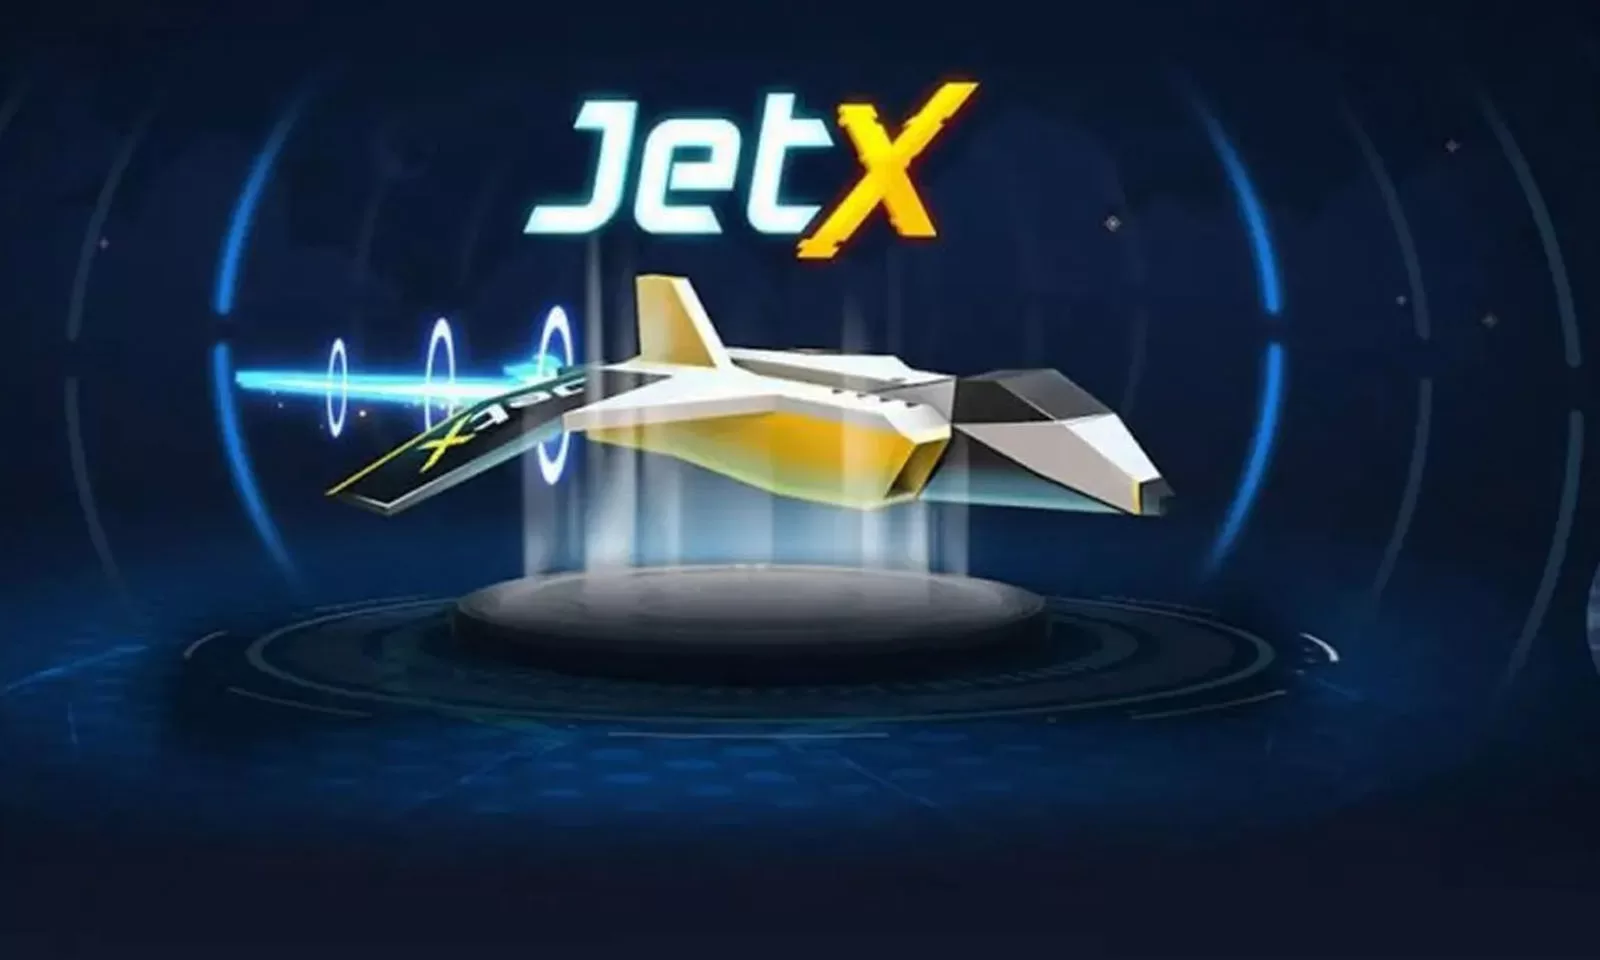 Arte dos Jogos JetX para ilustrar artigo.